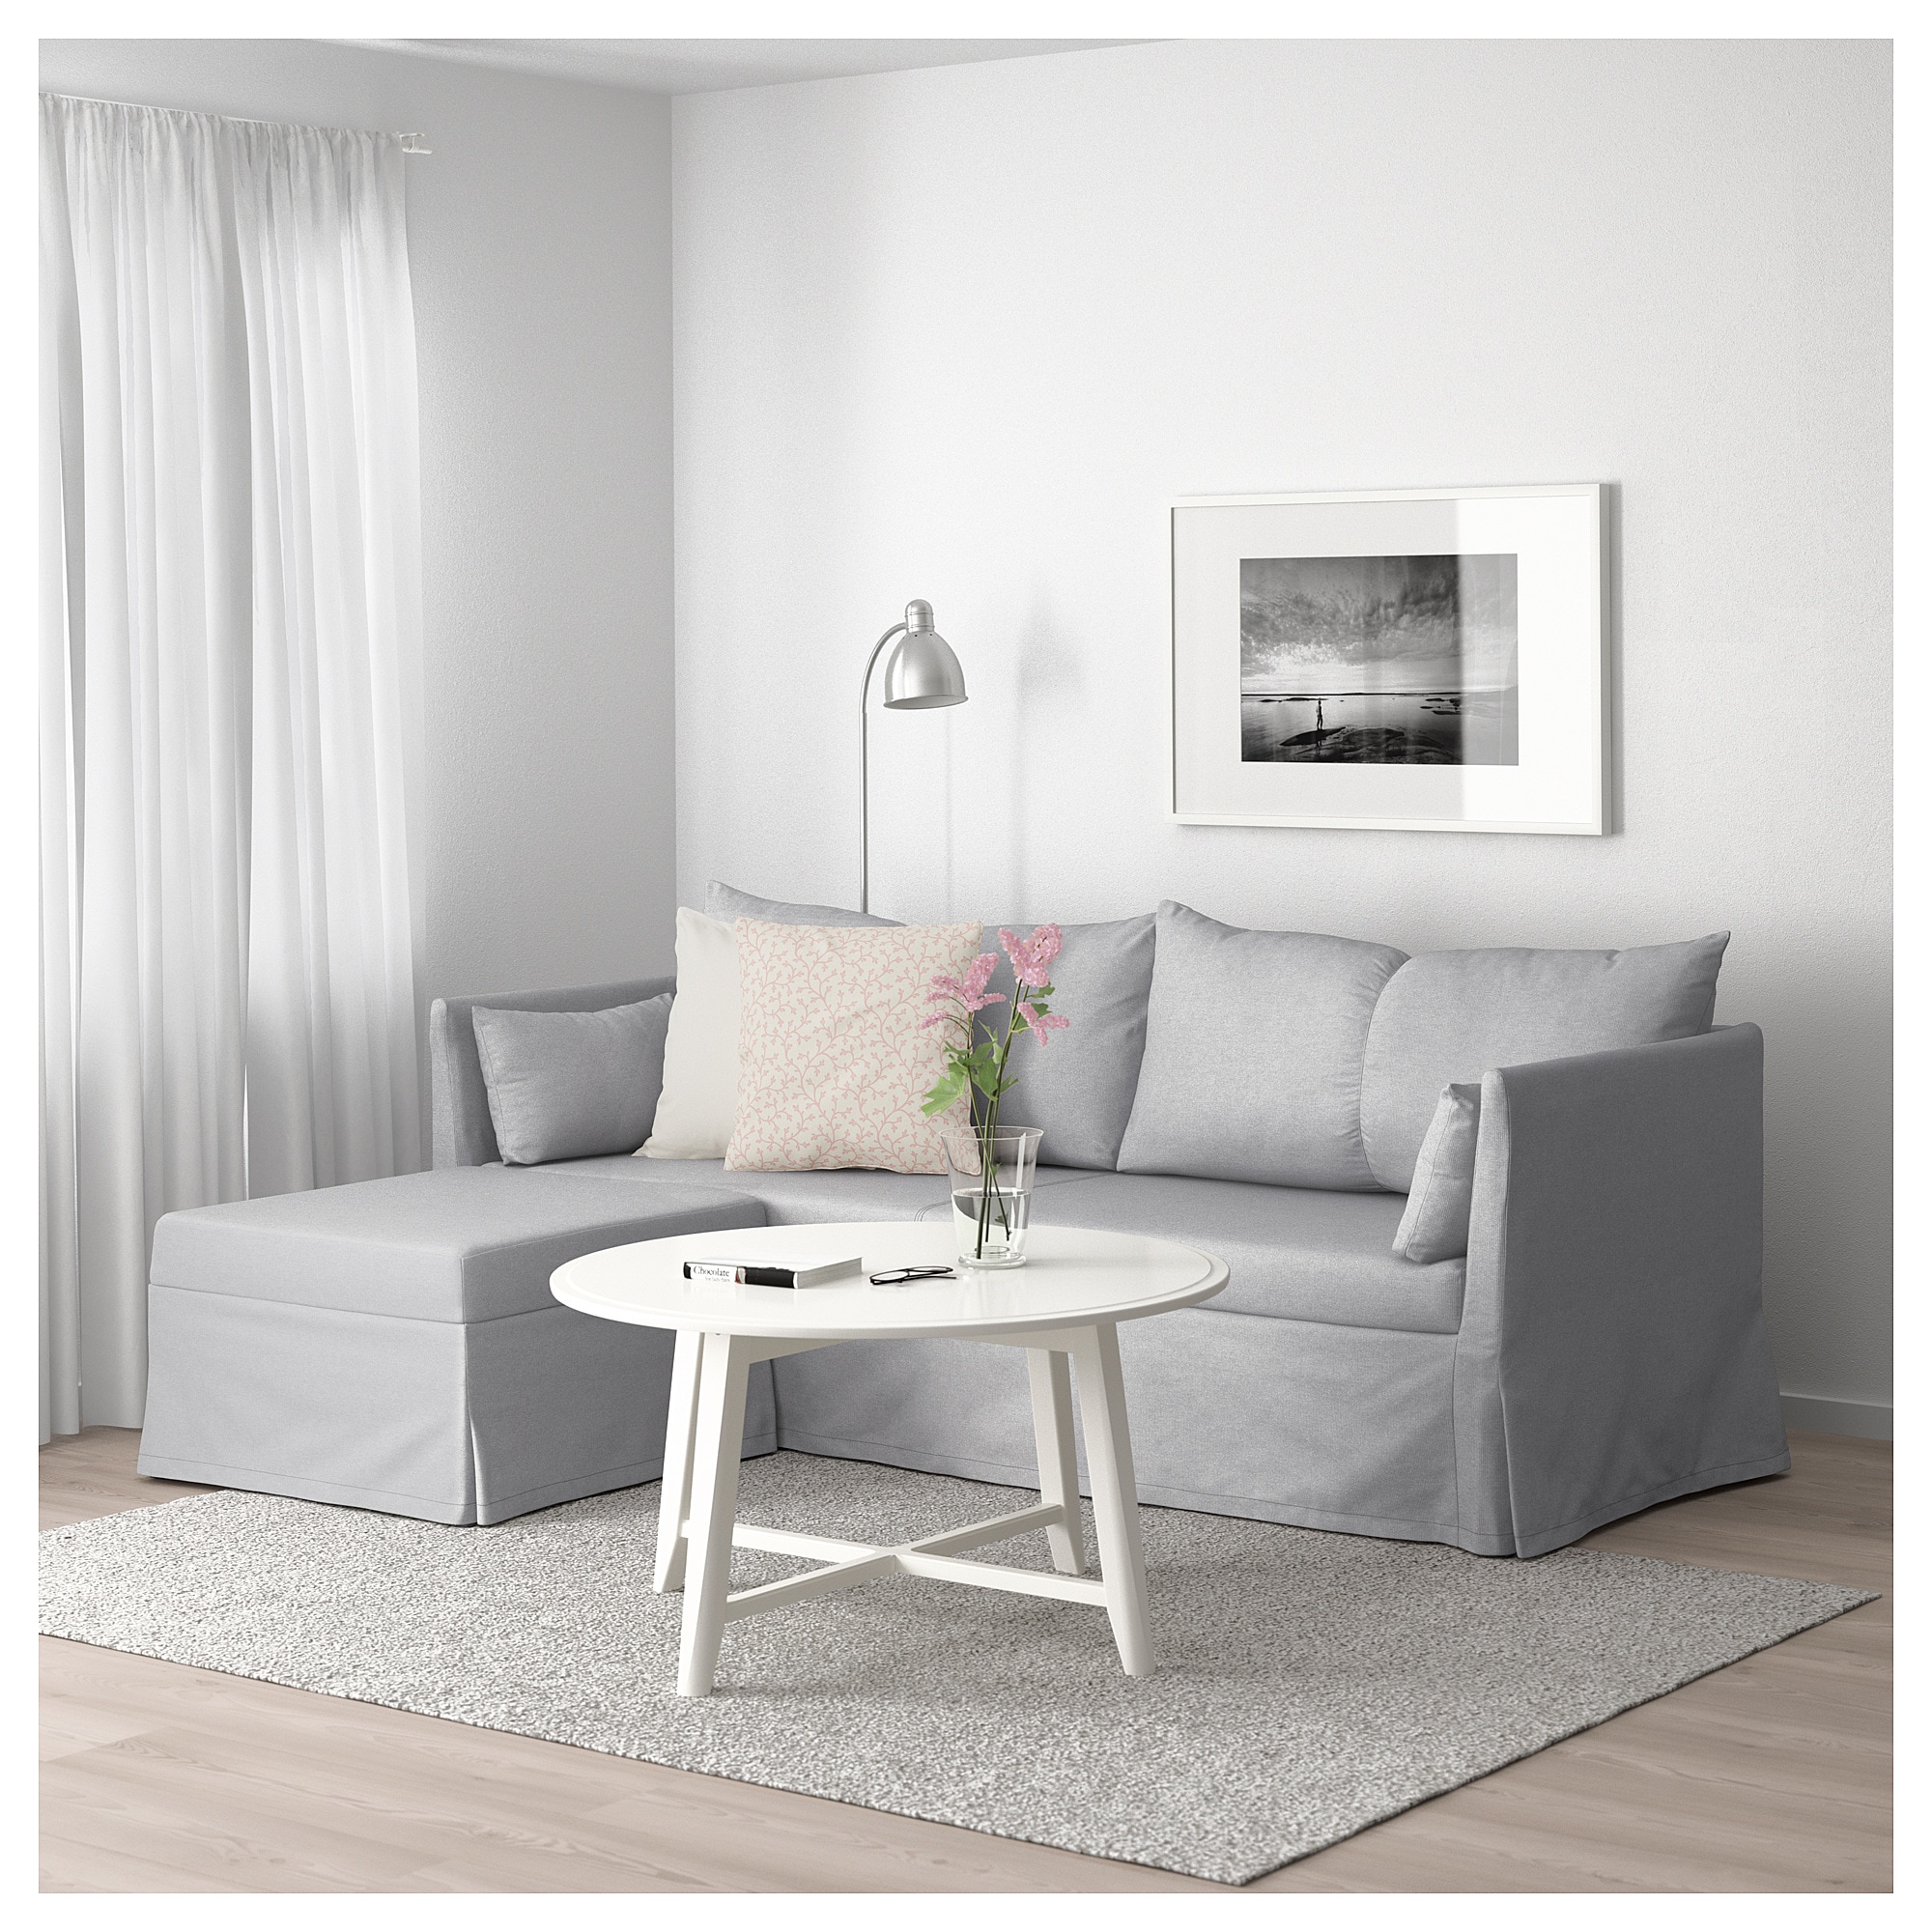 sammenholdt kompromis Løb IKEA Bråthult and Sandbacken sofa review: Same frame, different name? |  Comfort Works Blog & Sofa Resources